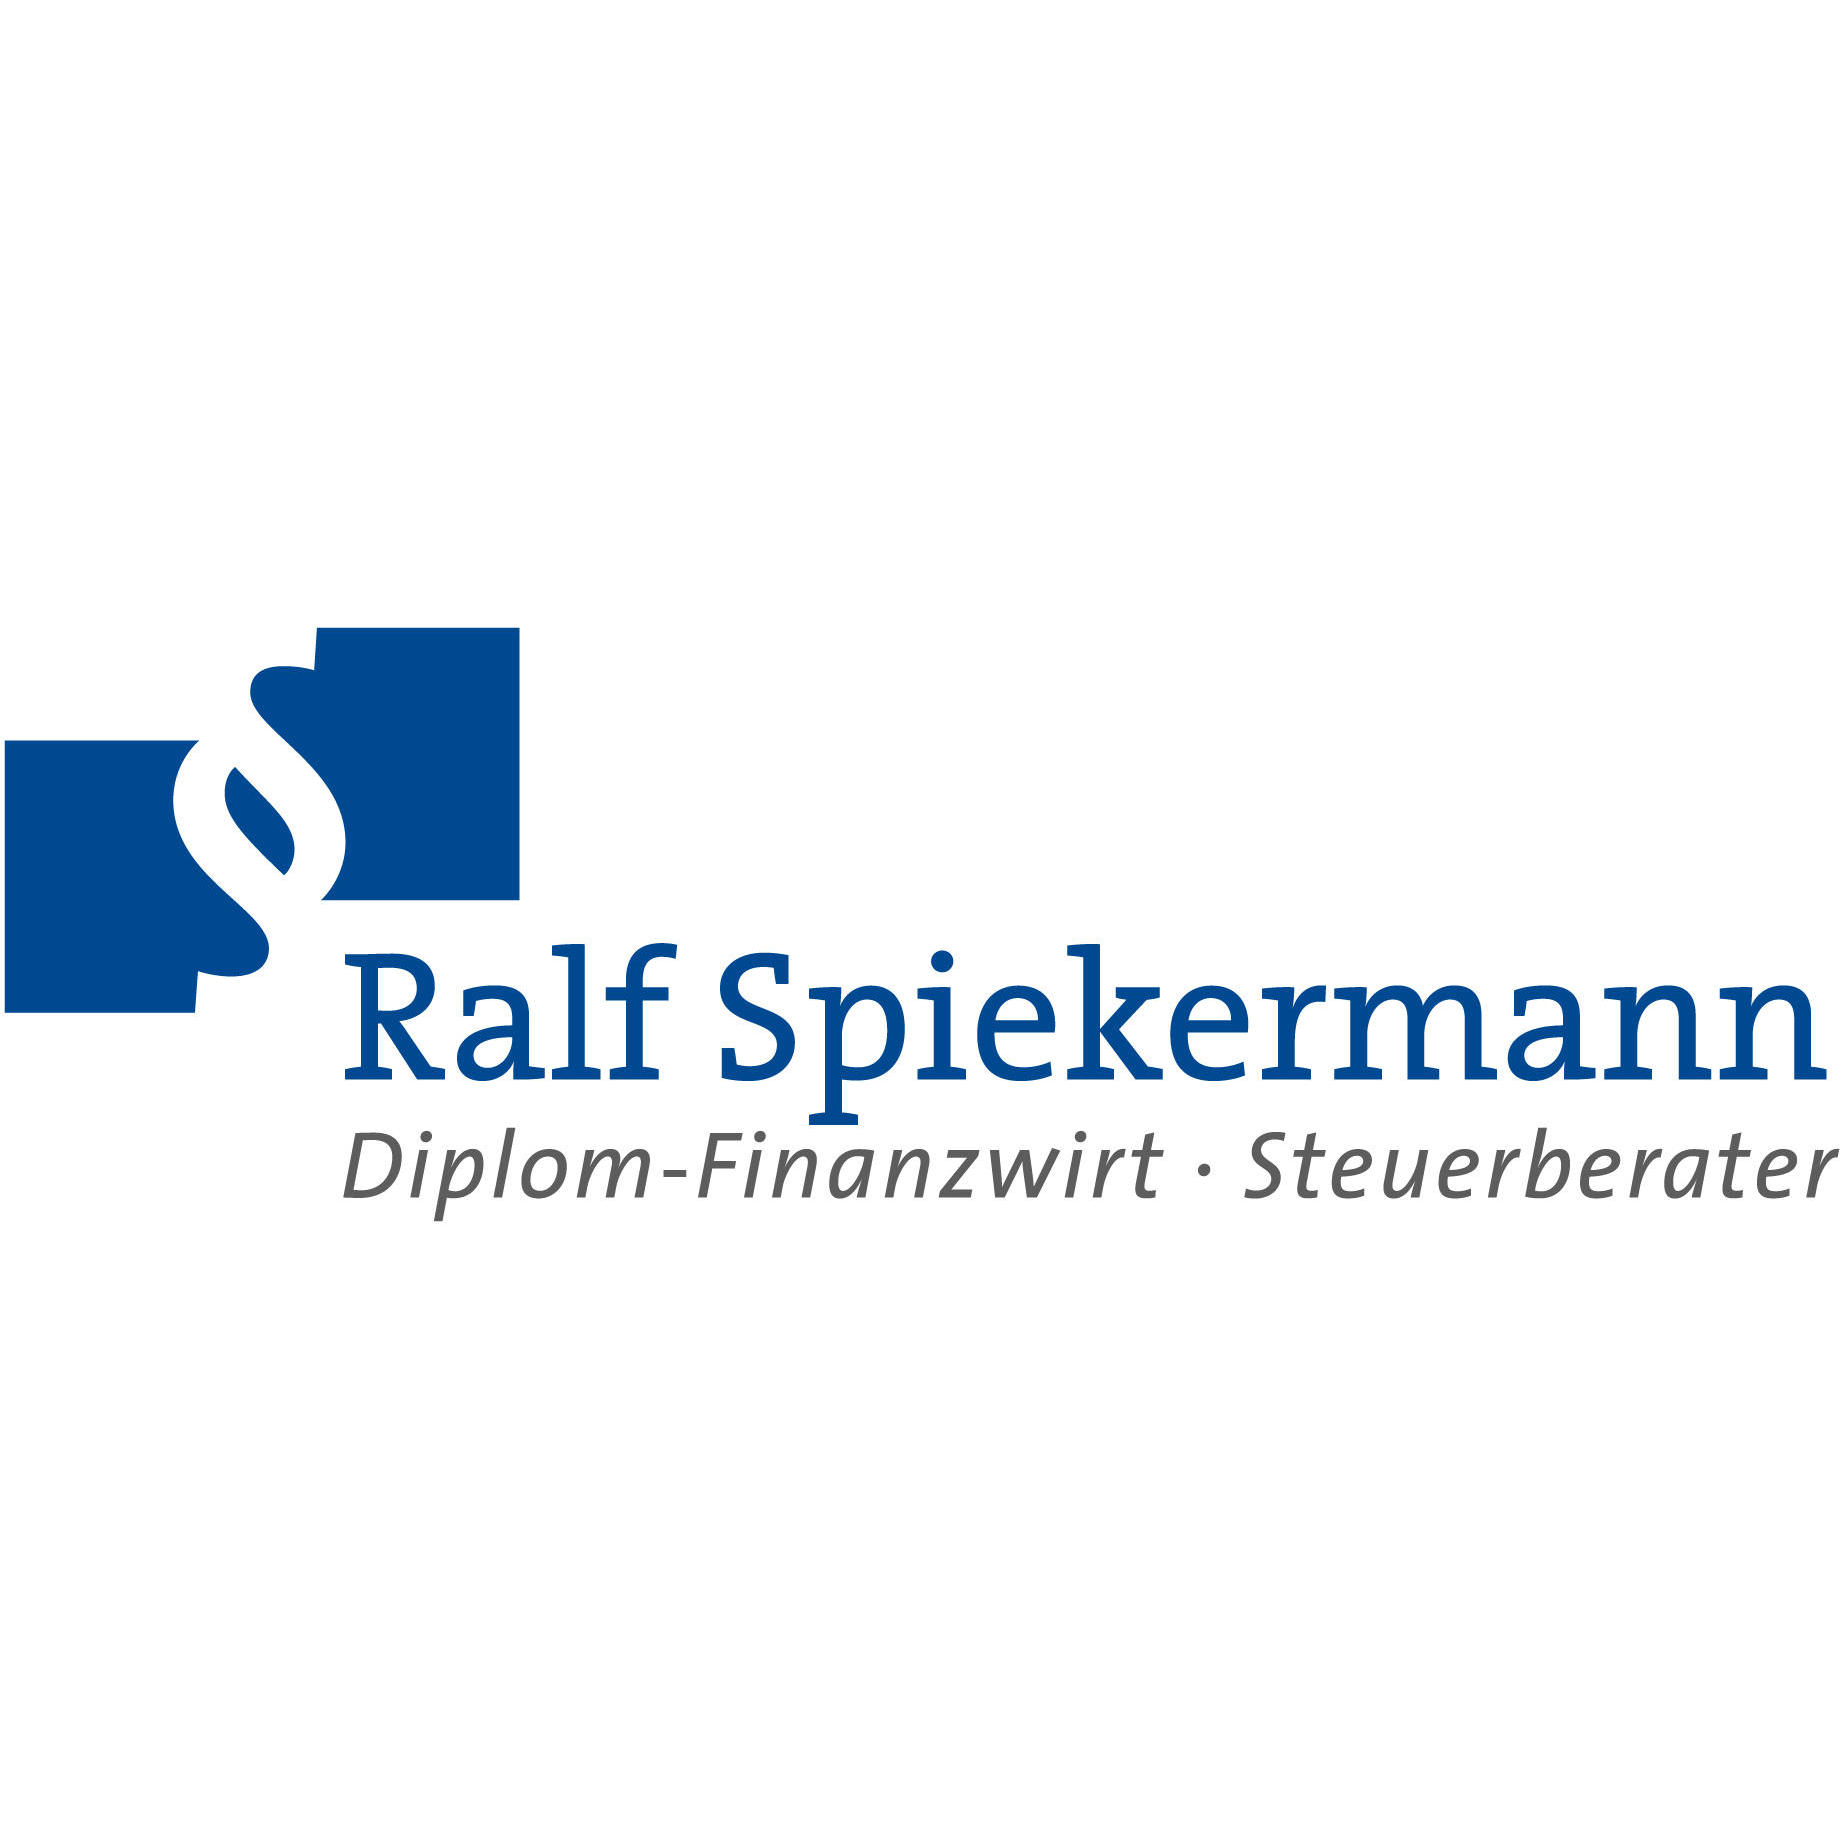 Ralf Spiekermann Dipl. Finanzwirt Steuerberater in Pirna - Logo